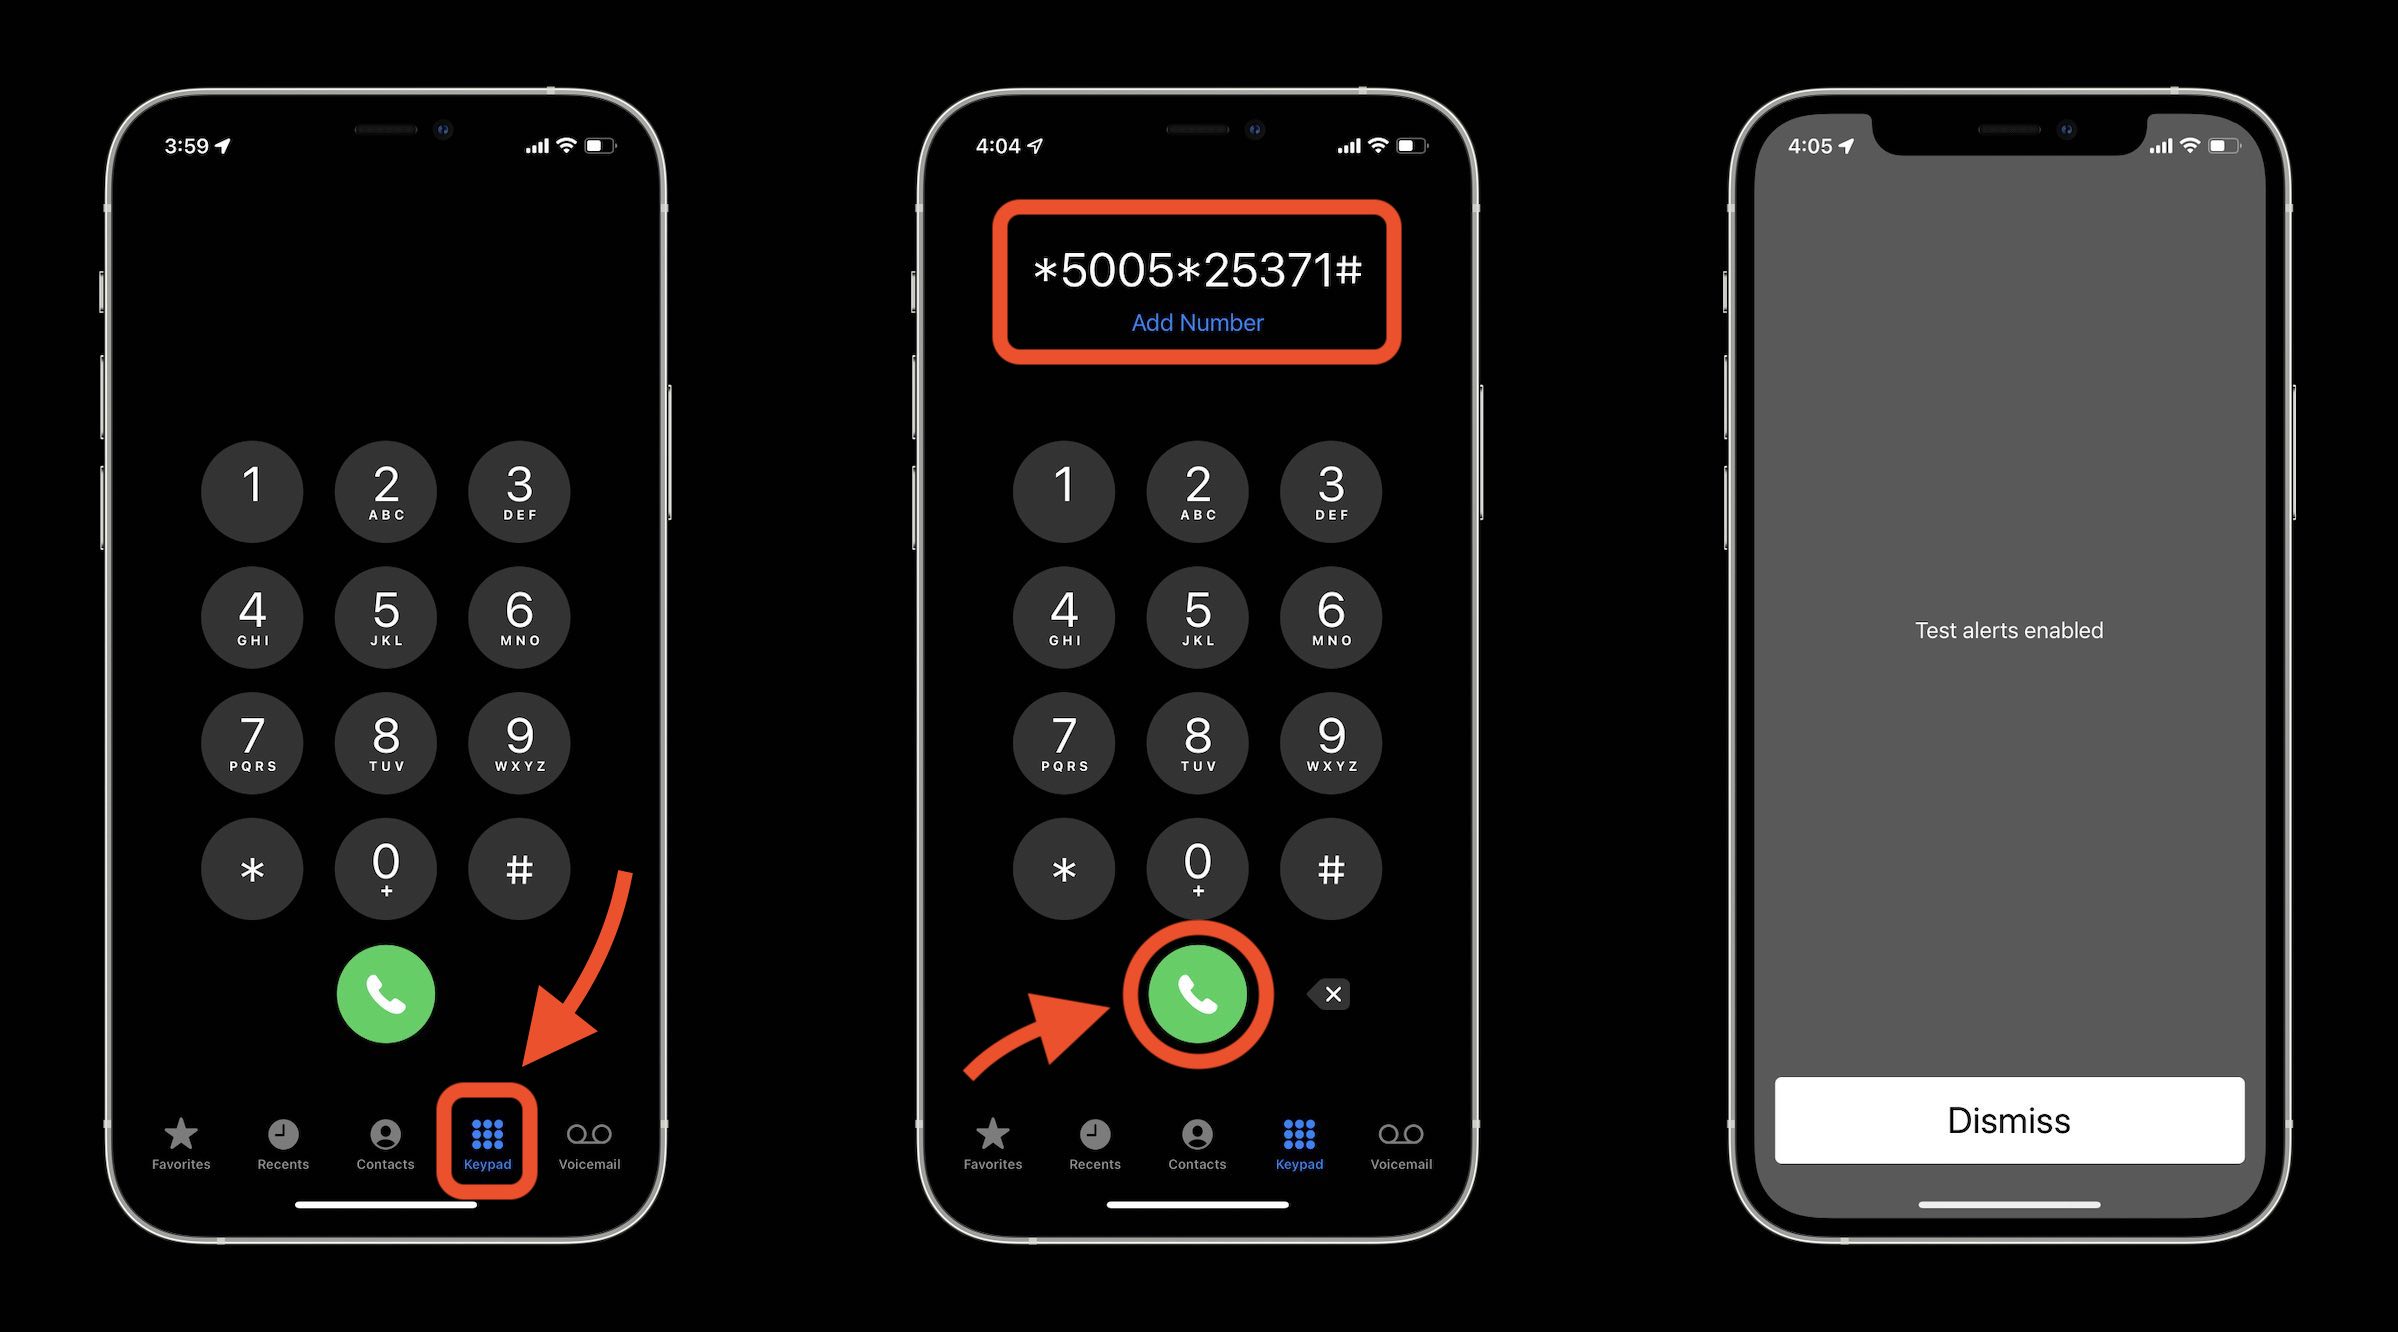  Cómo activar / desactivar las alertas de emergencia de prueba en el iPhone en el dial de EE.UU. *5005*25371# en la aplicación telefónica